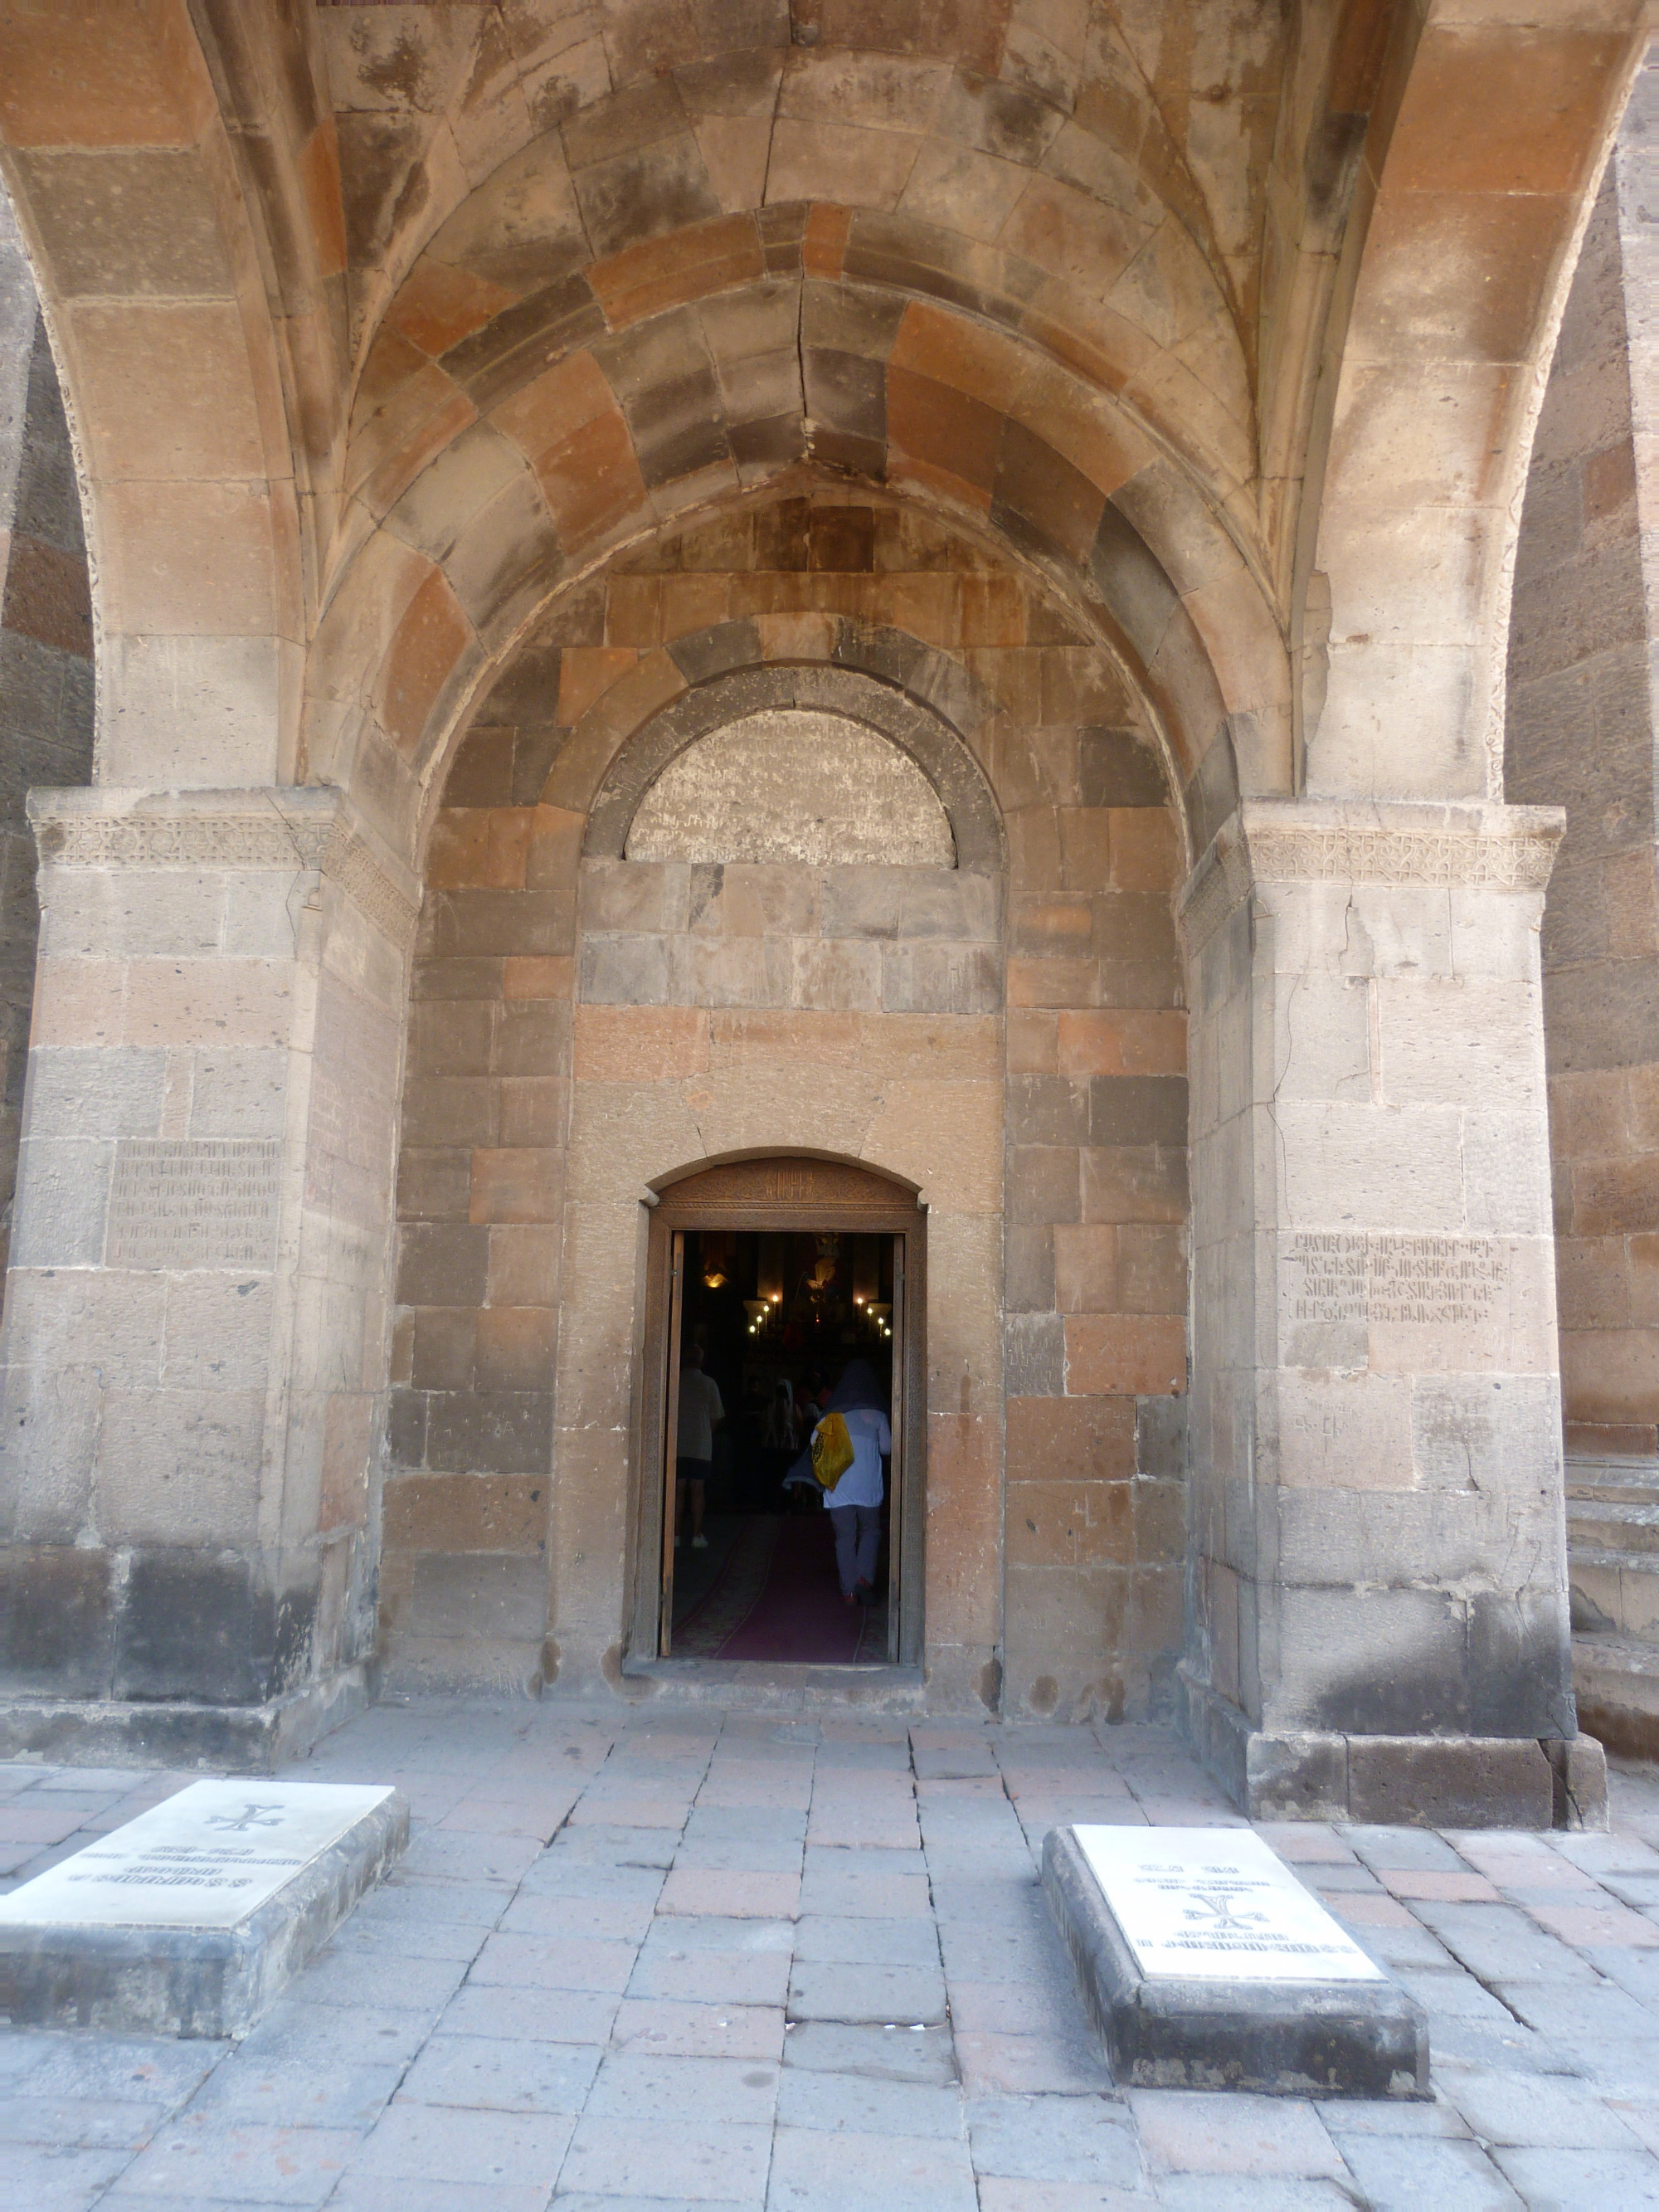 Saint Hripsime Church, Armenia